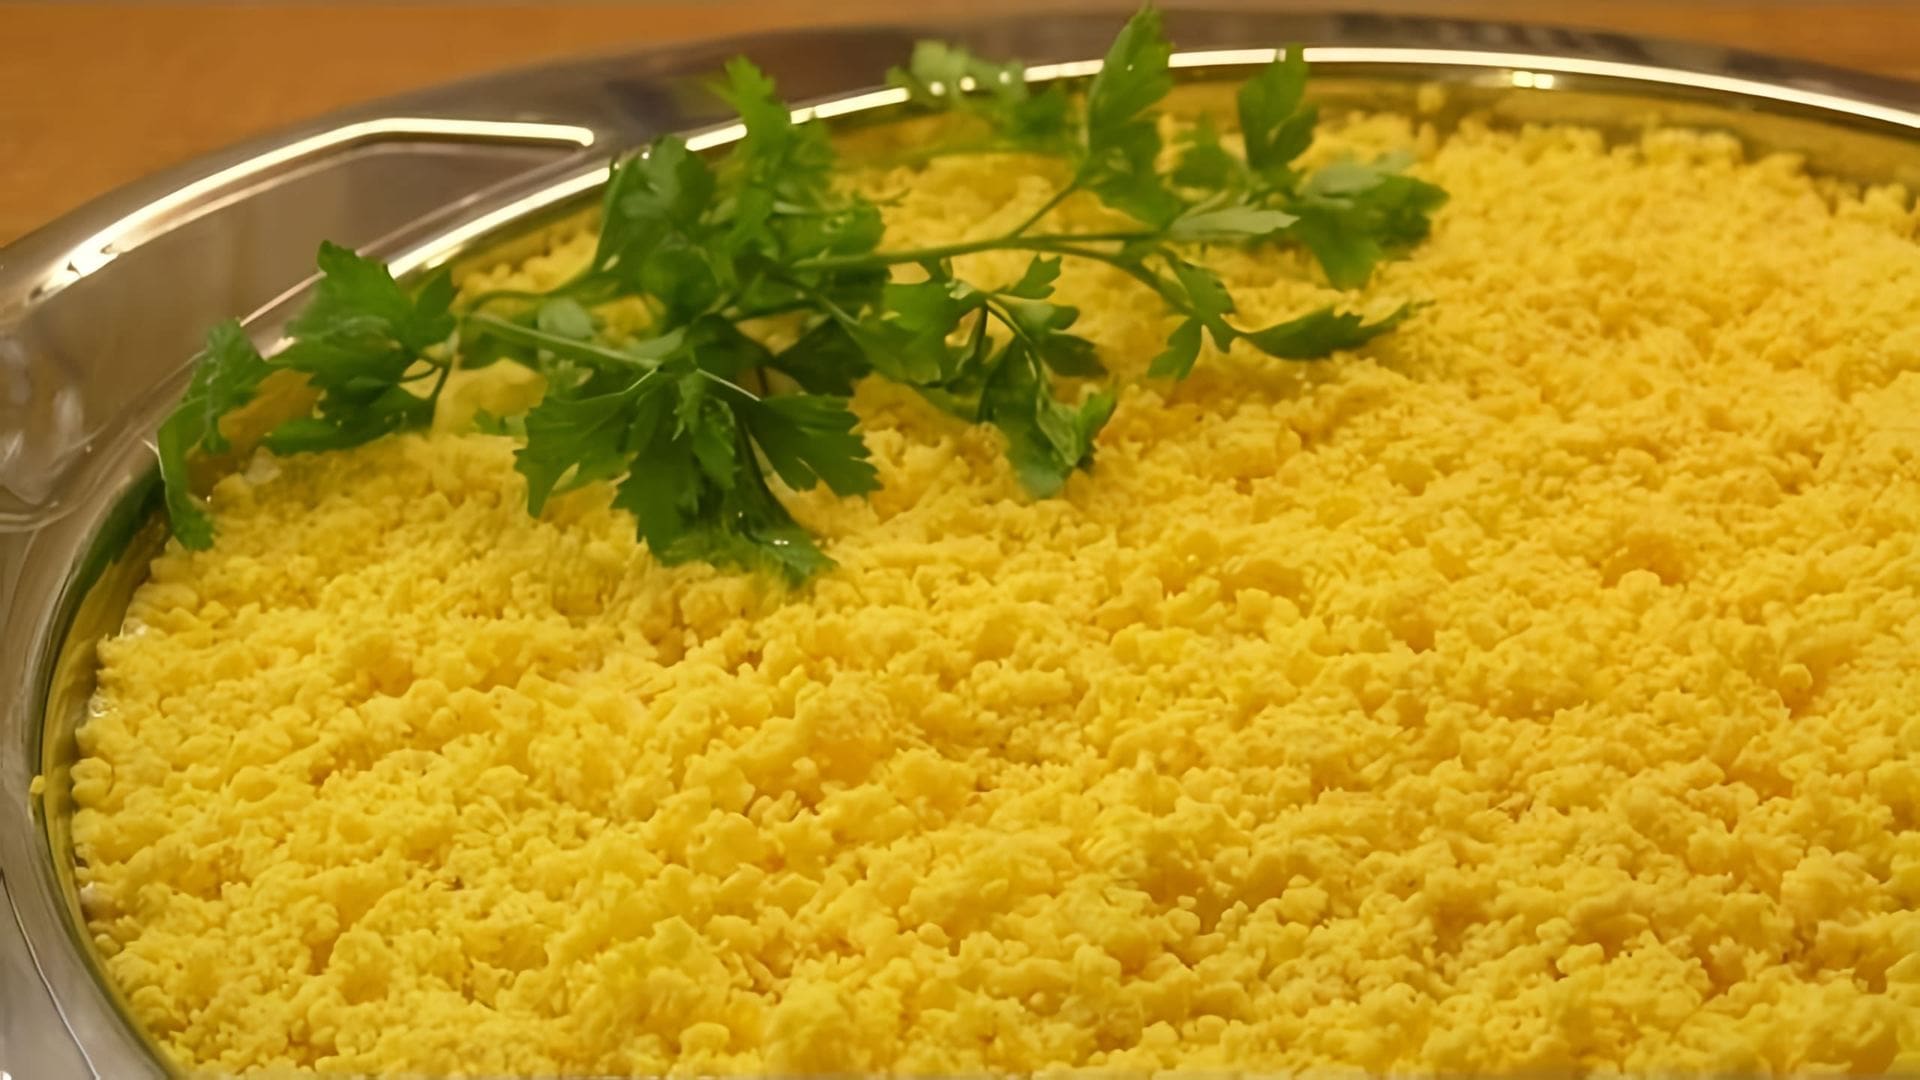 В данном видео демонстрируется процесс приготовления салата Мимоза, который является одним из основных блюд на праздничном столе